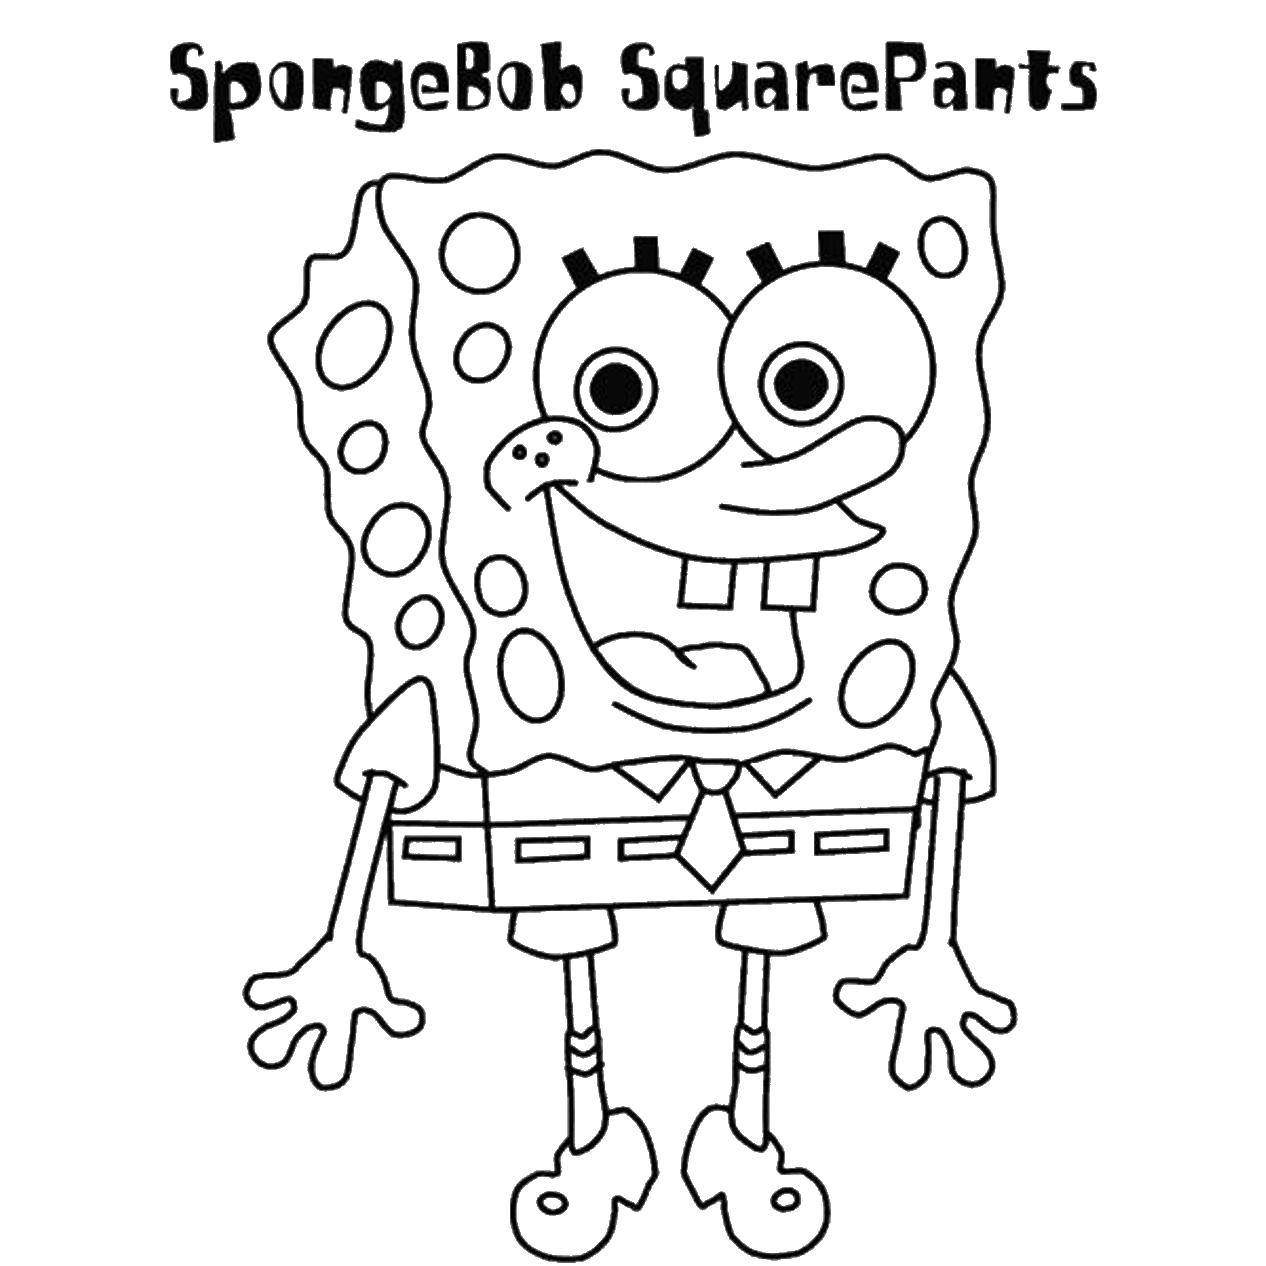 Раскраски из мультфильма Губка Боб Квадратные штаны (Sponge Bob Squarepants)